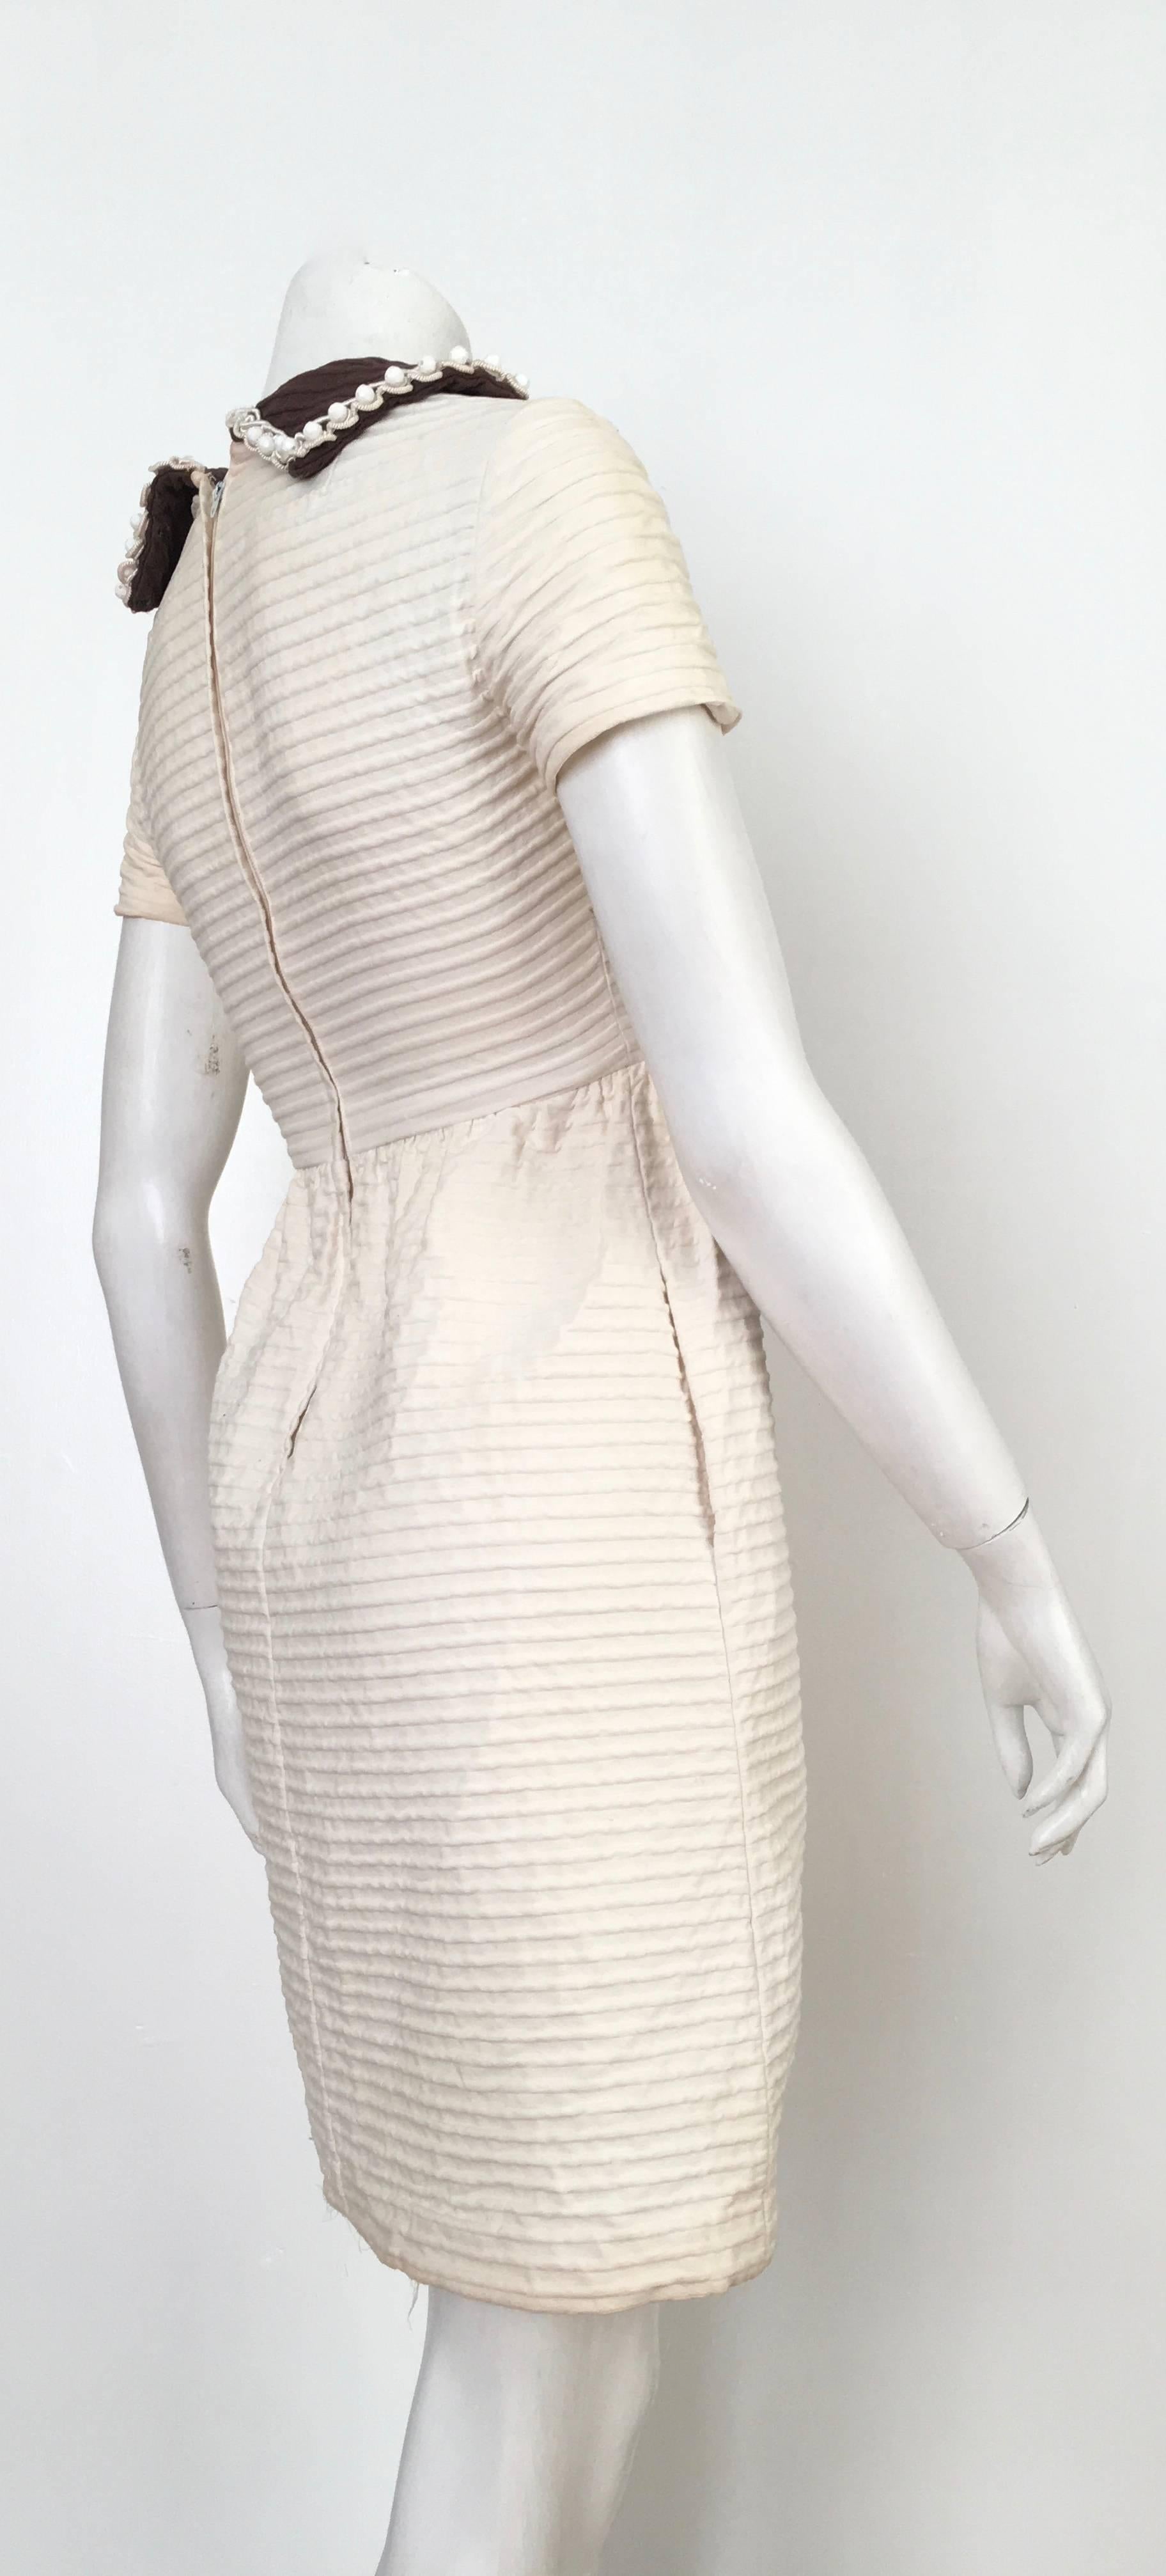 Women's or Men's Oscar de la Renta Cotton Dress with Pockets Size 2. For Sale